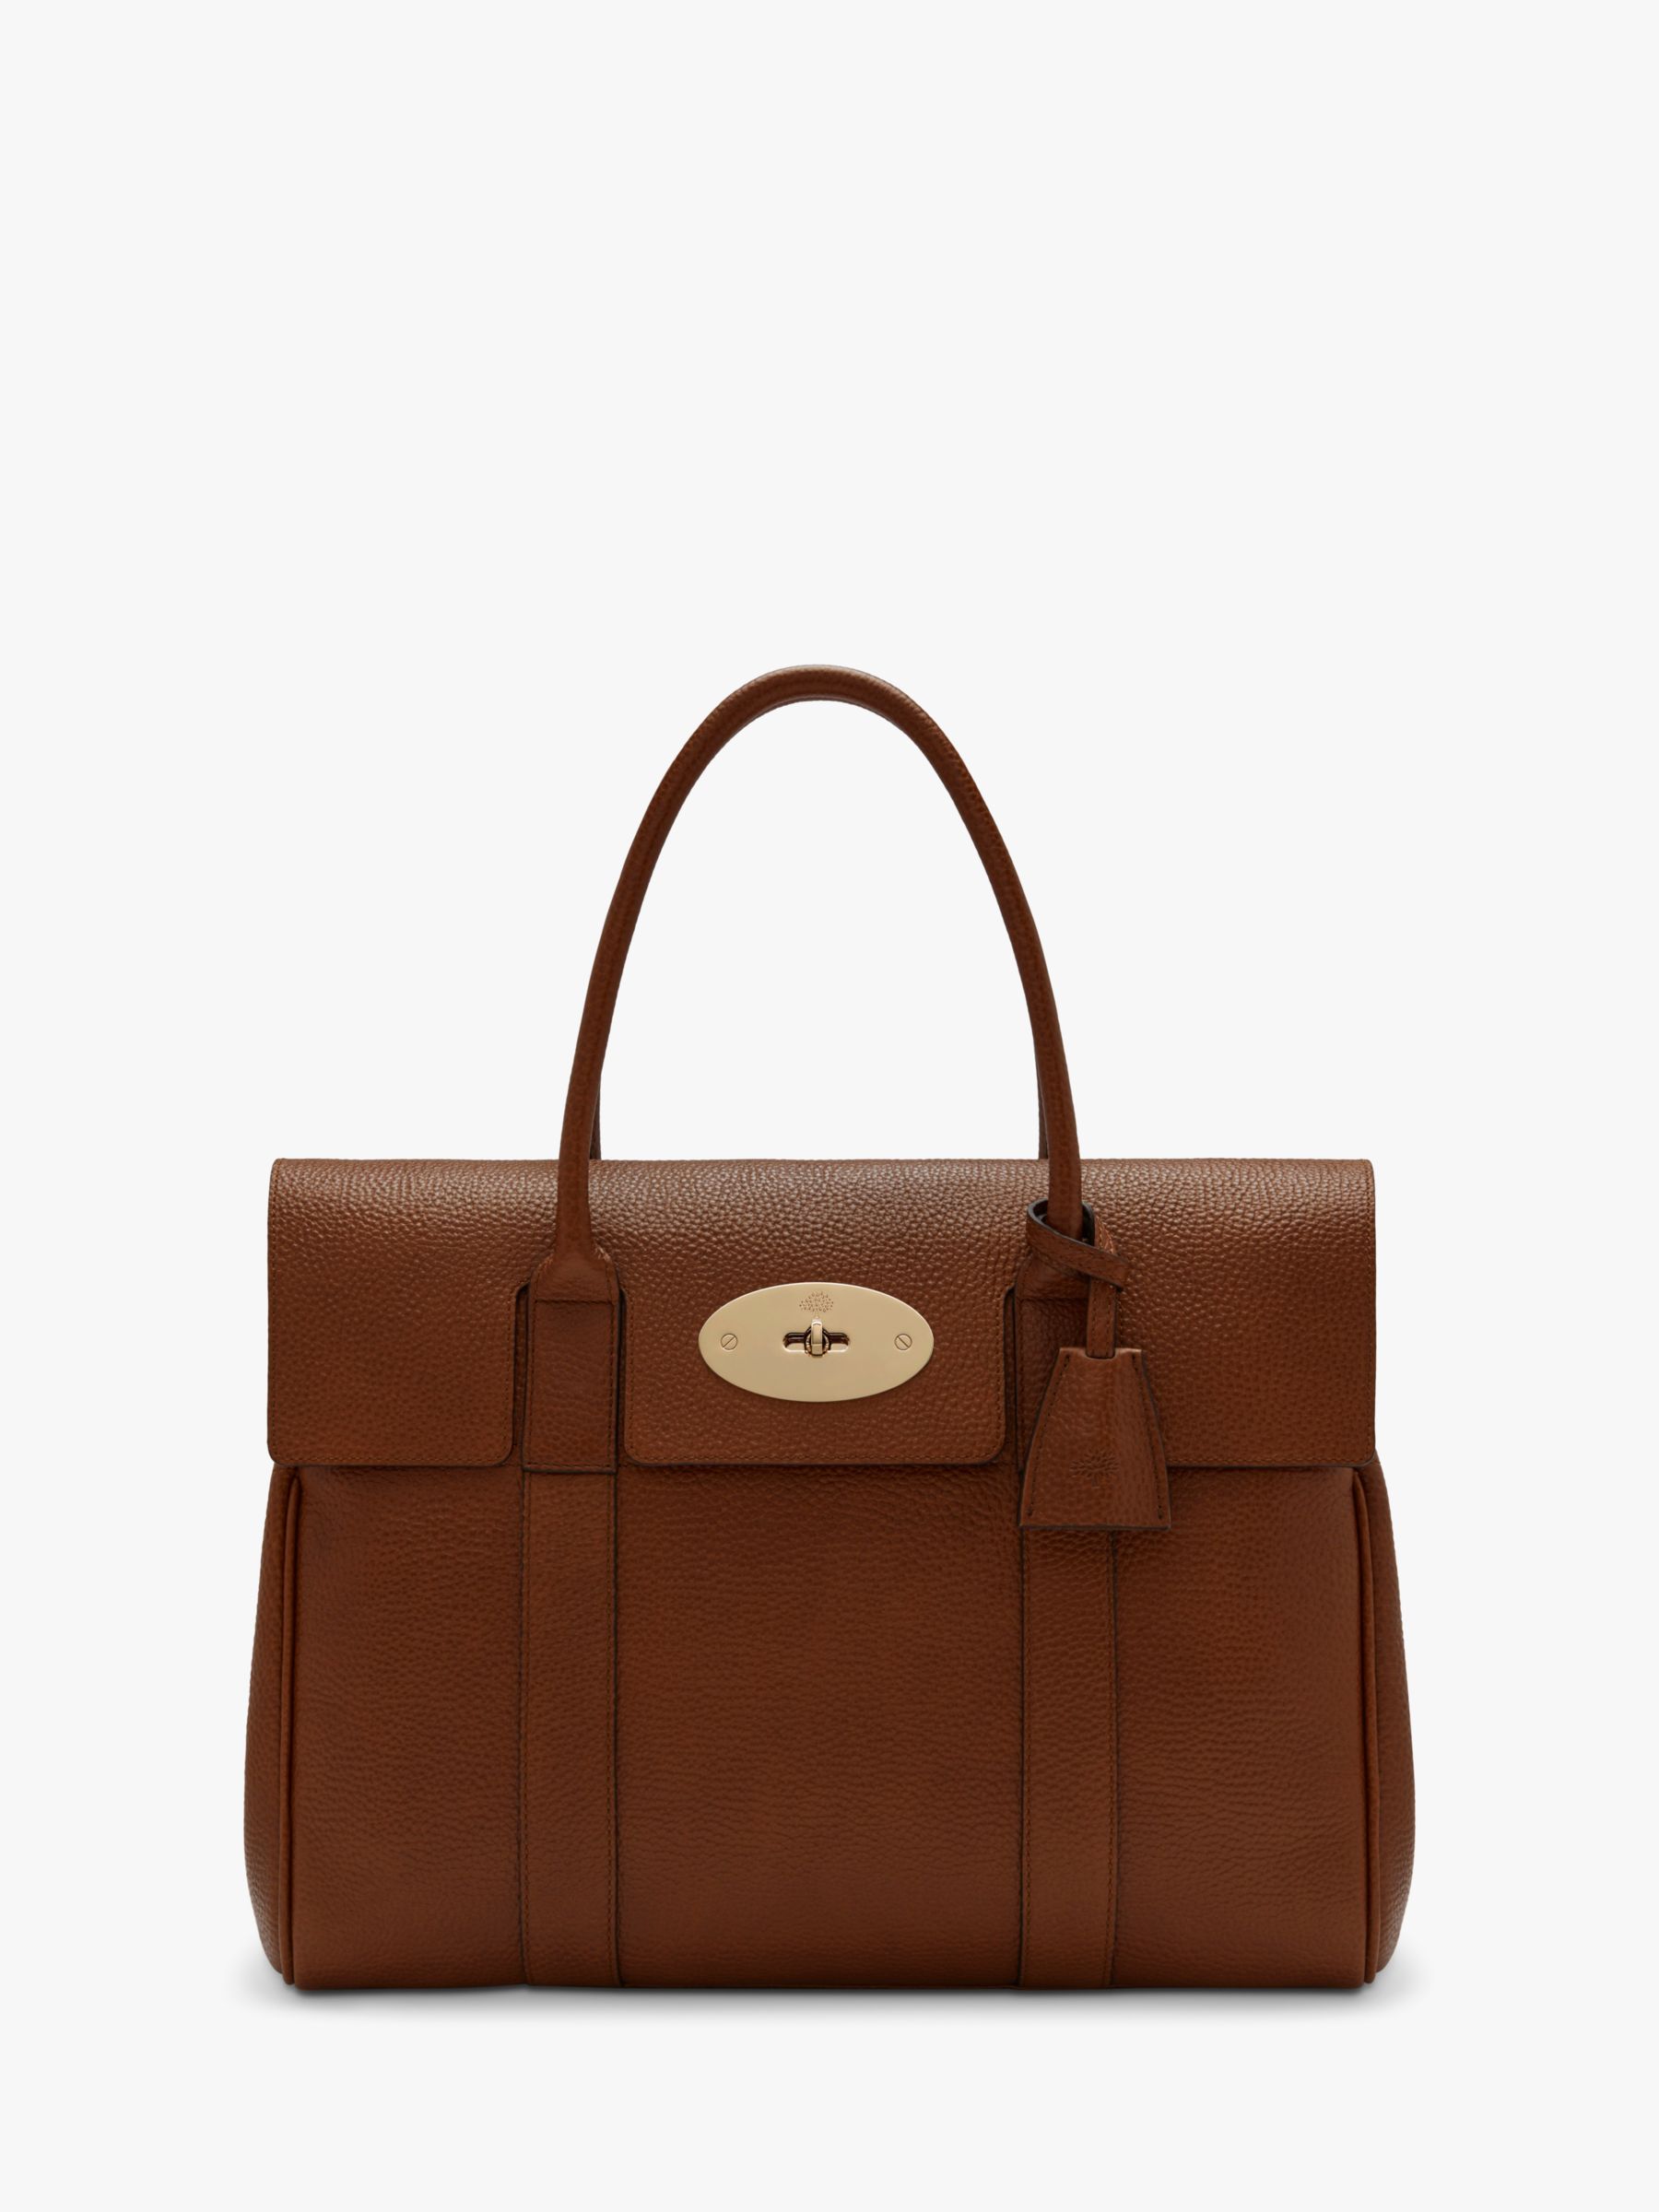 John Lewis Bags & Handbags for Women for sale